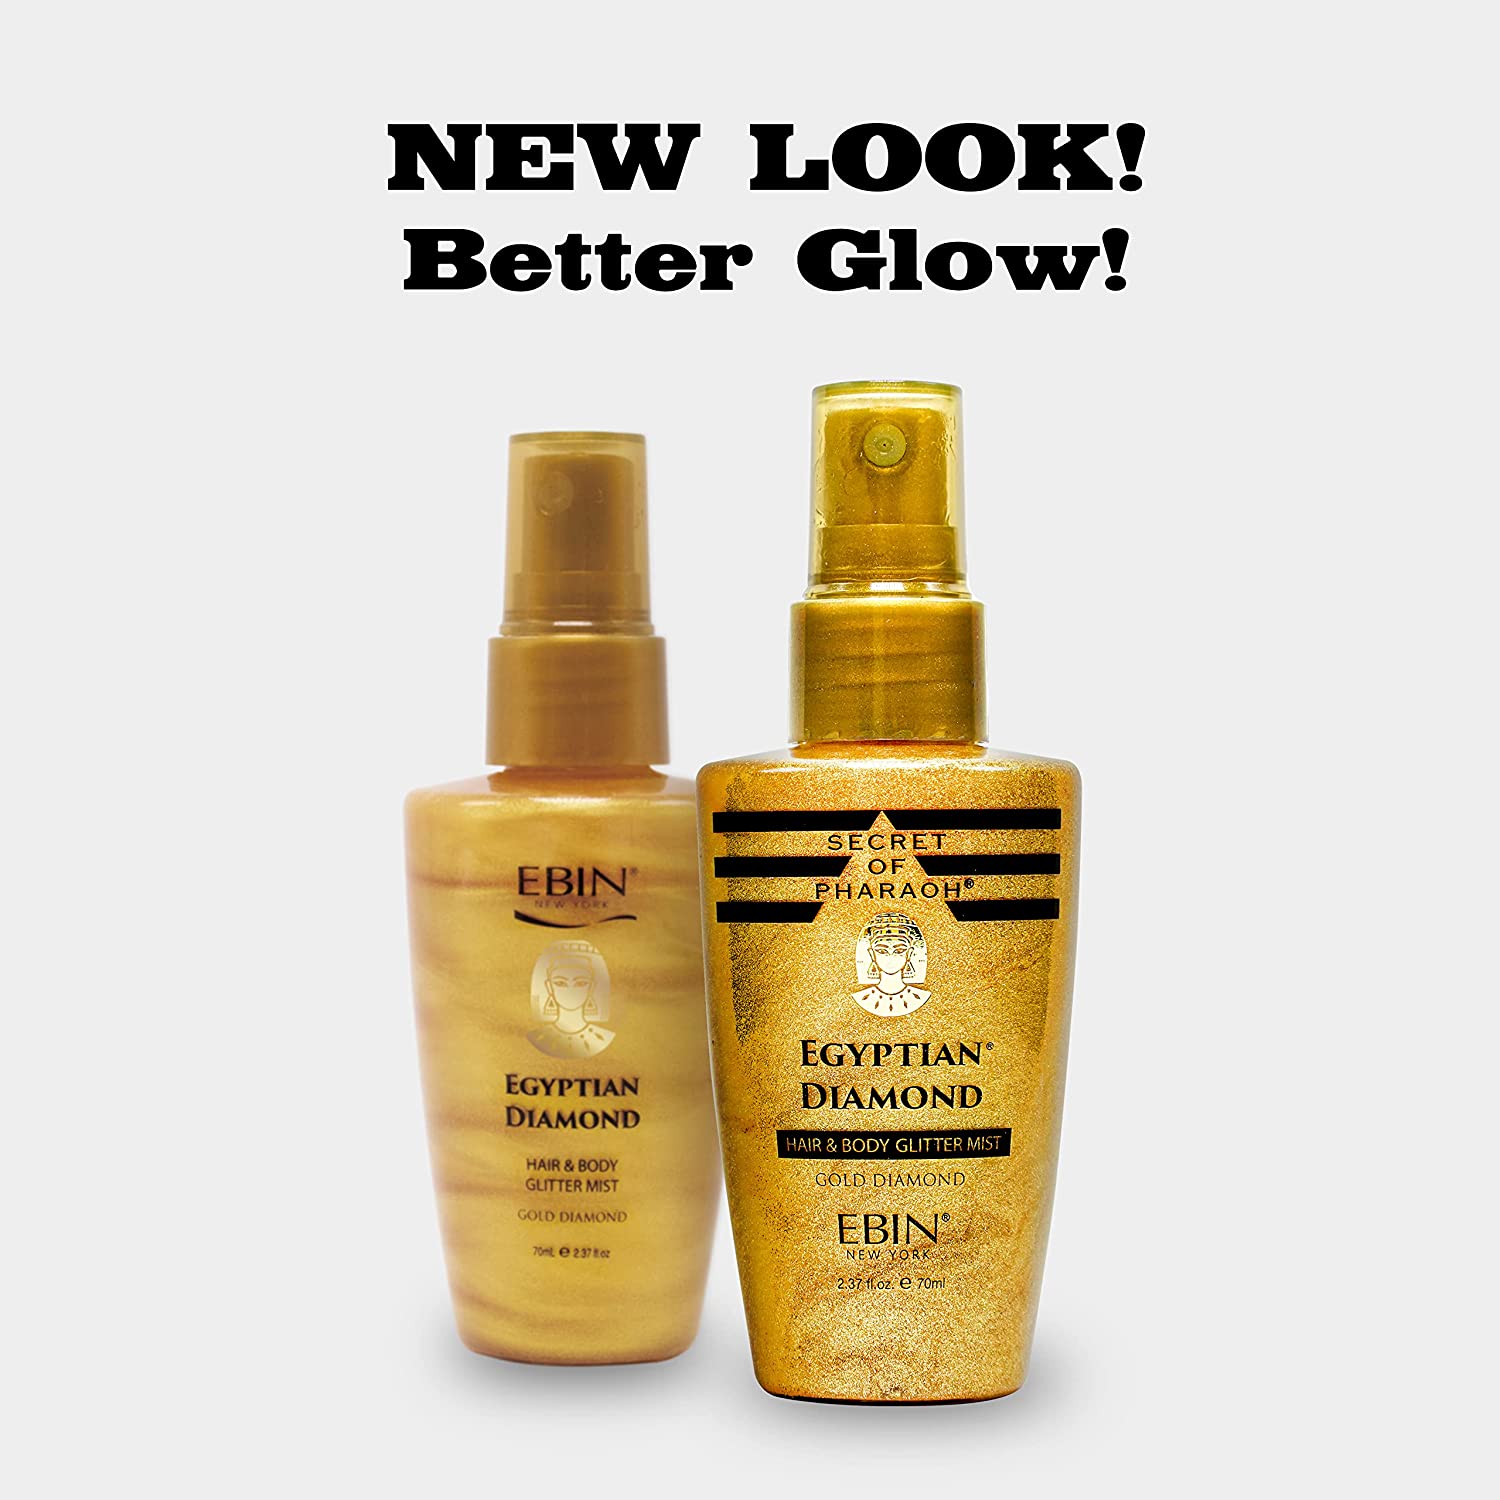 EBIN NEW YORK Secret of Pharaoh Hair & Body Glitter Mist Spray Find Your New Look Today!